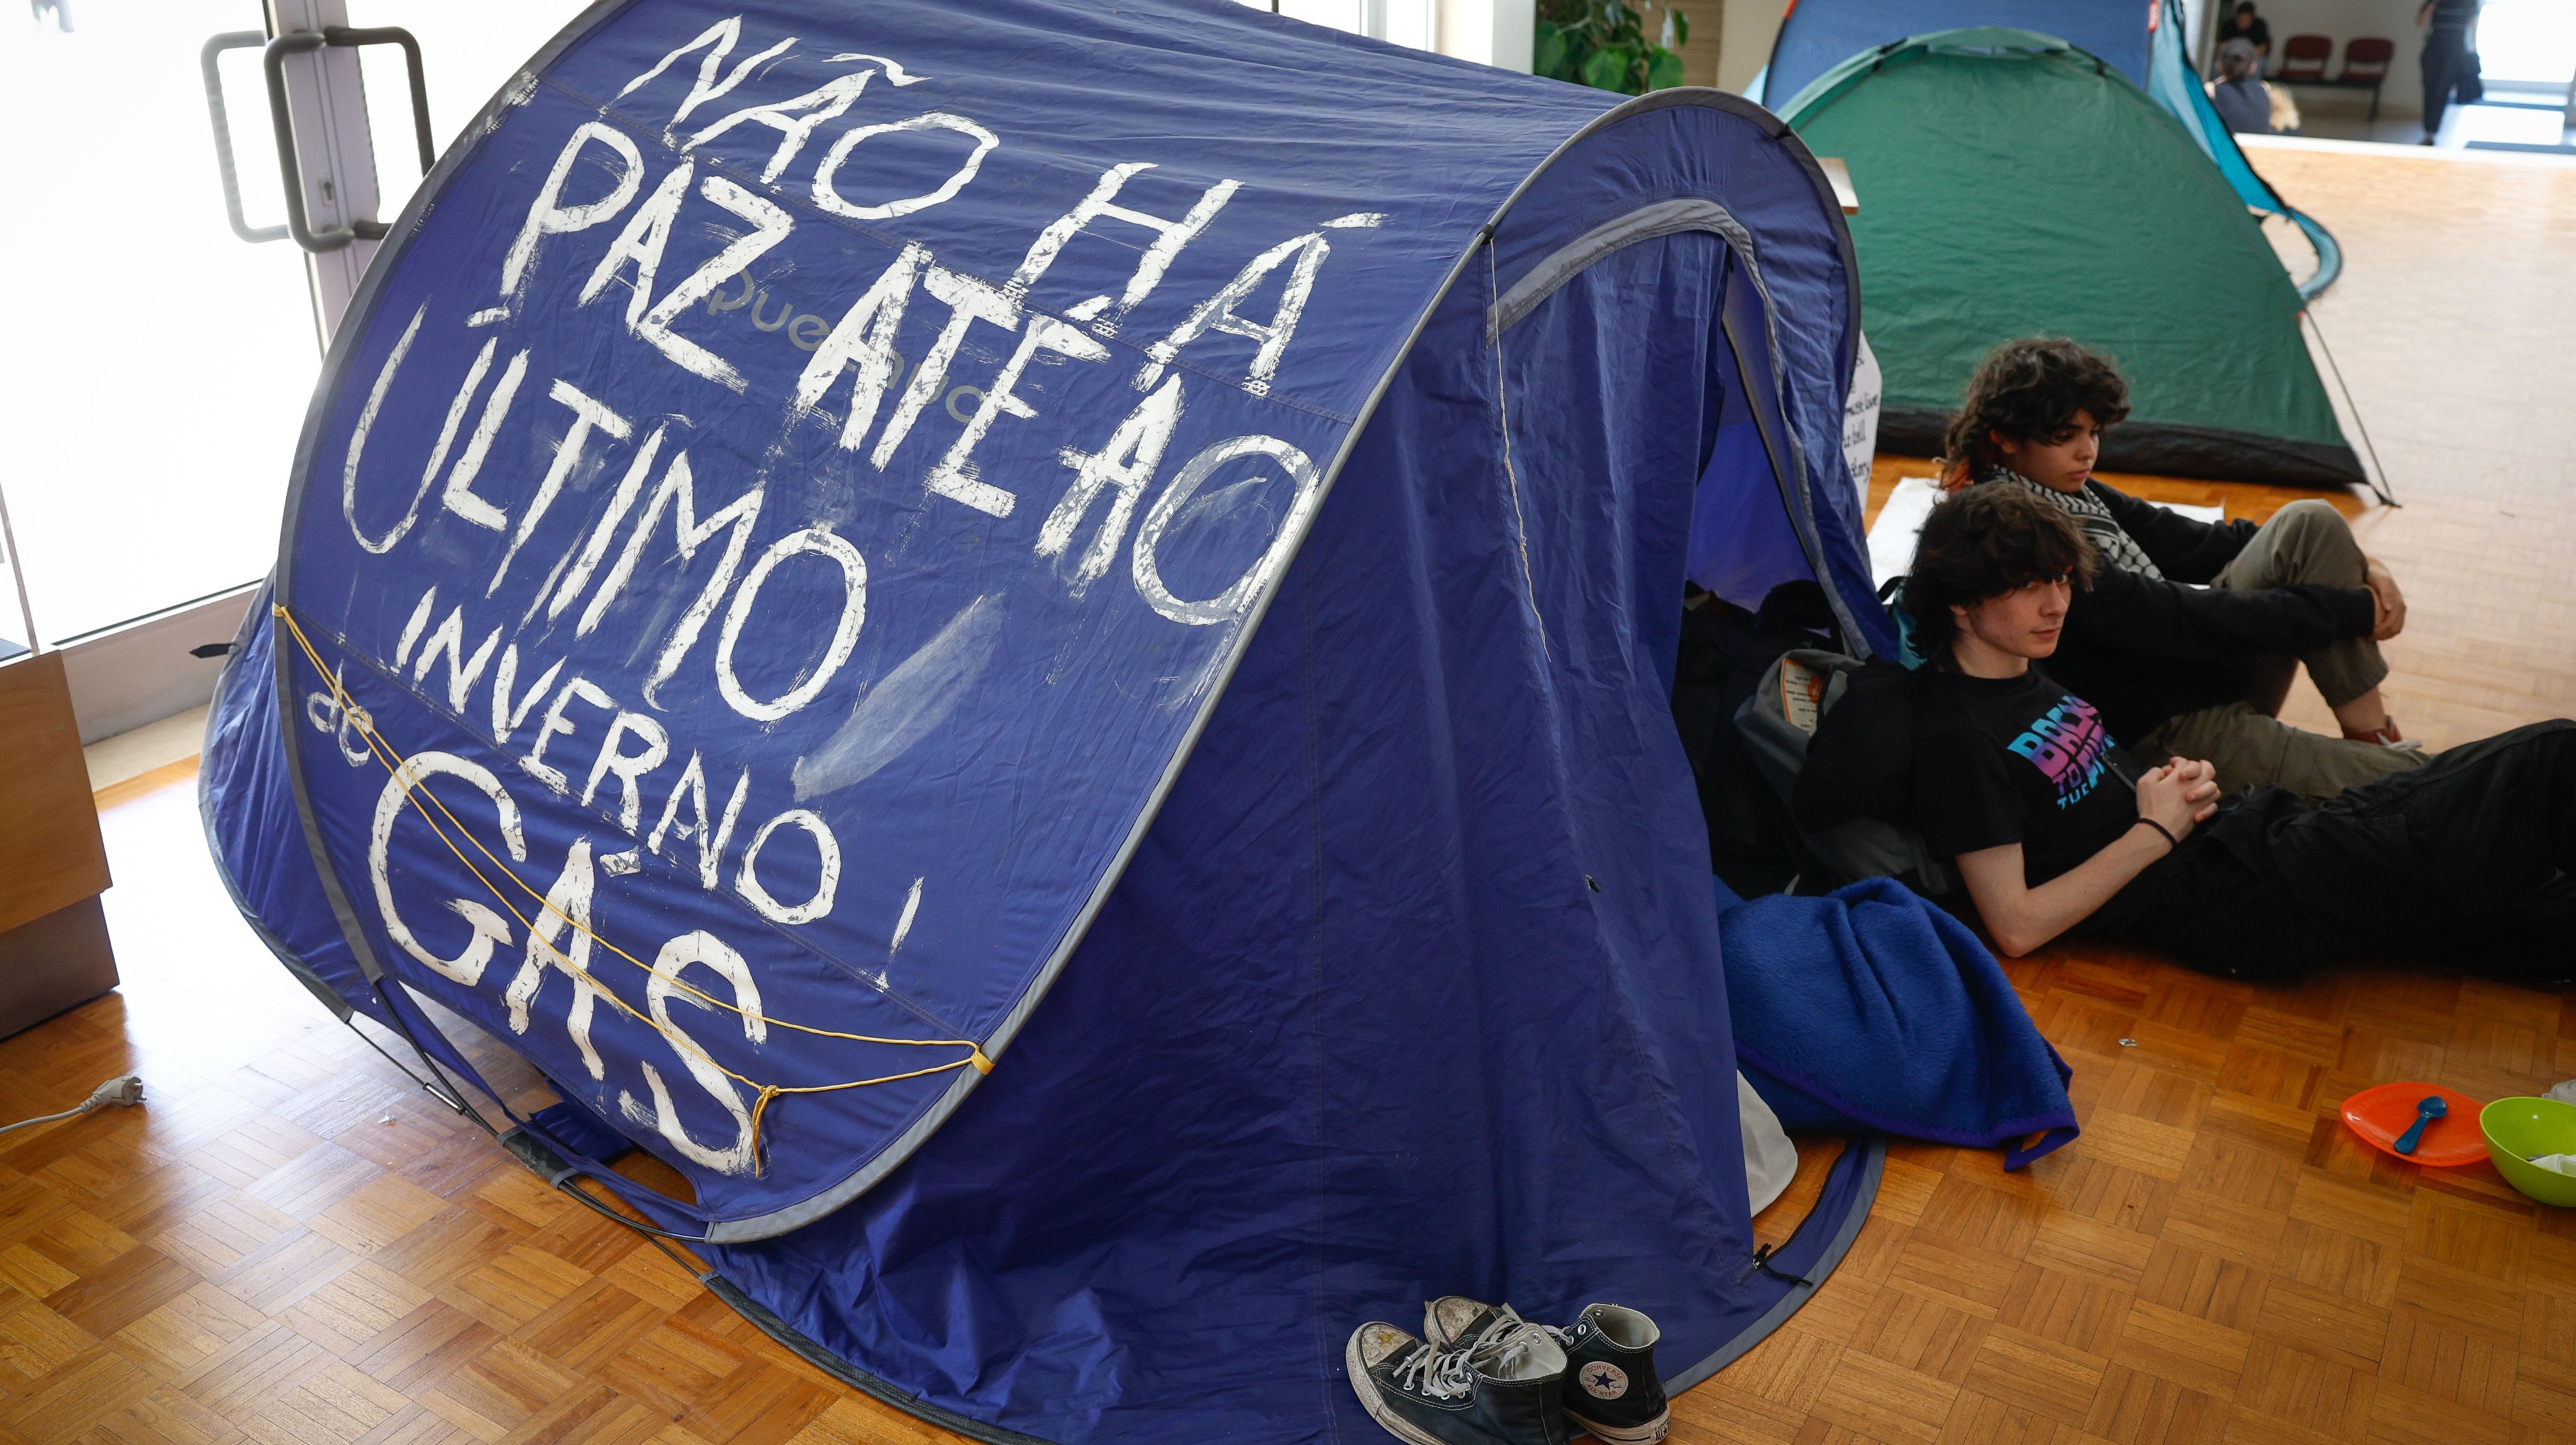 O protesto de estudantes teve início na terça-feira e, no dia seguinte, quase duplicou de tamanho, havendo 15 tendas no local